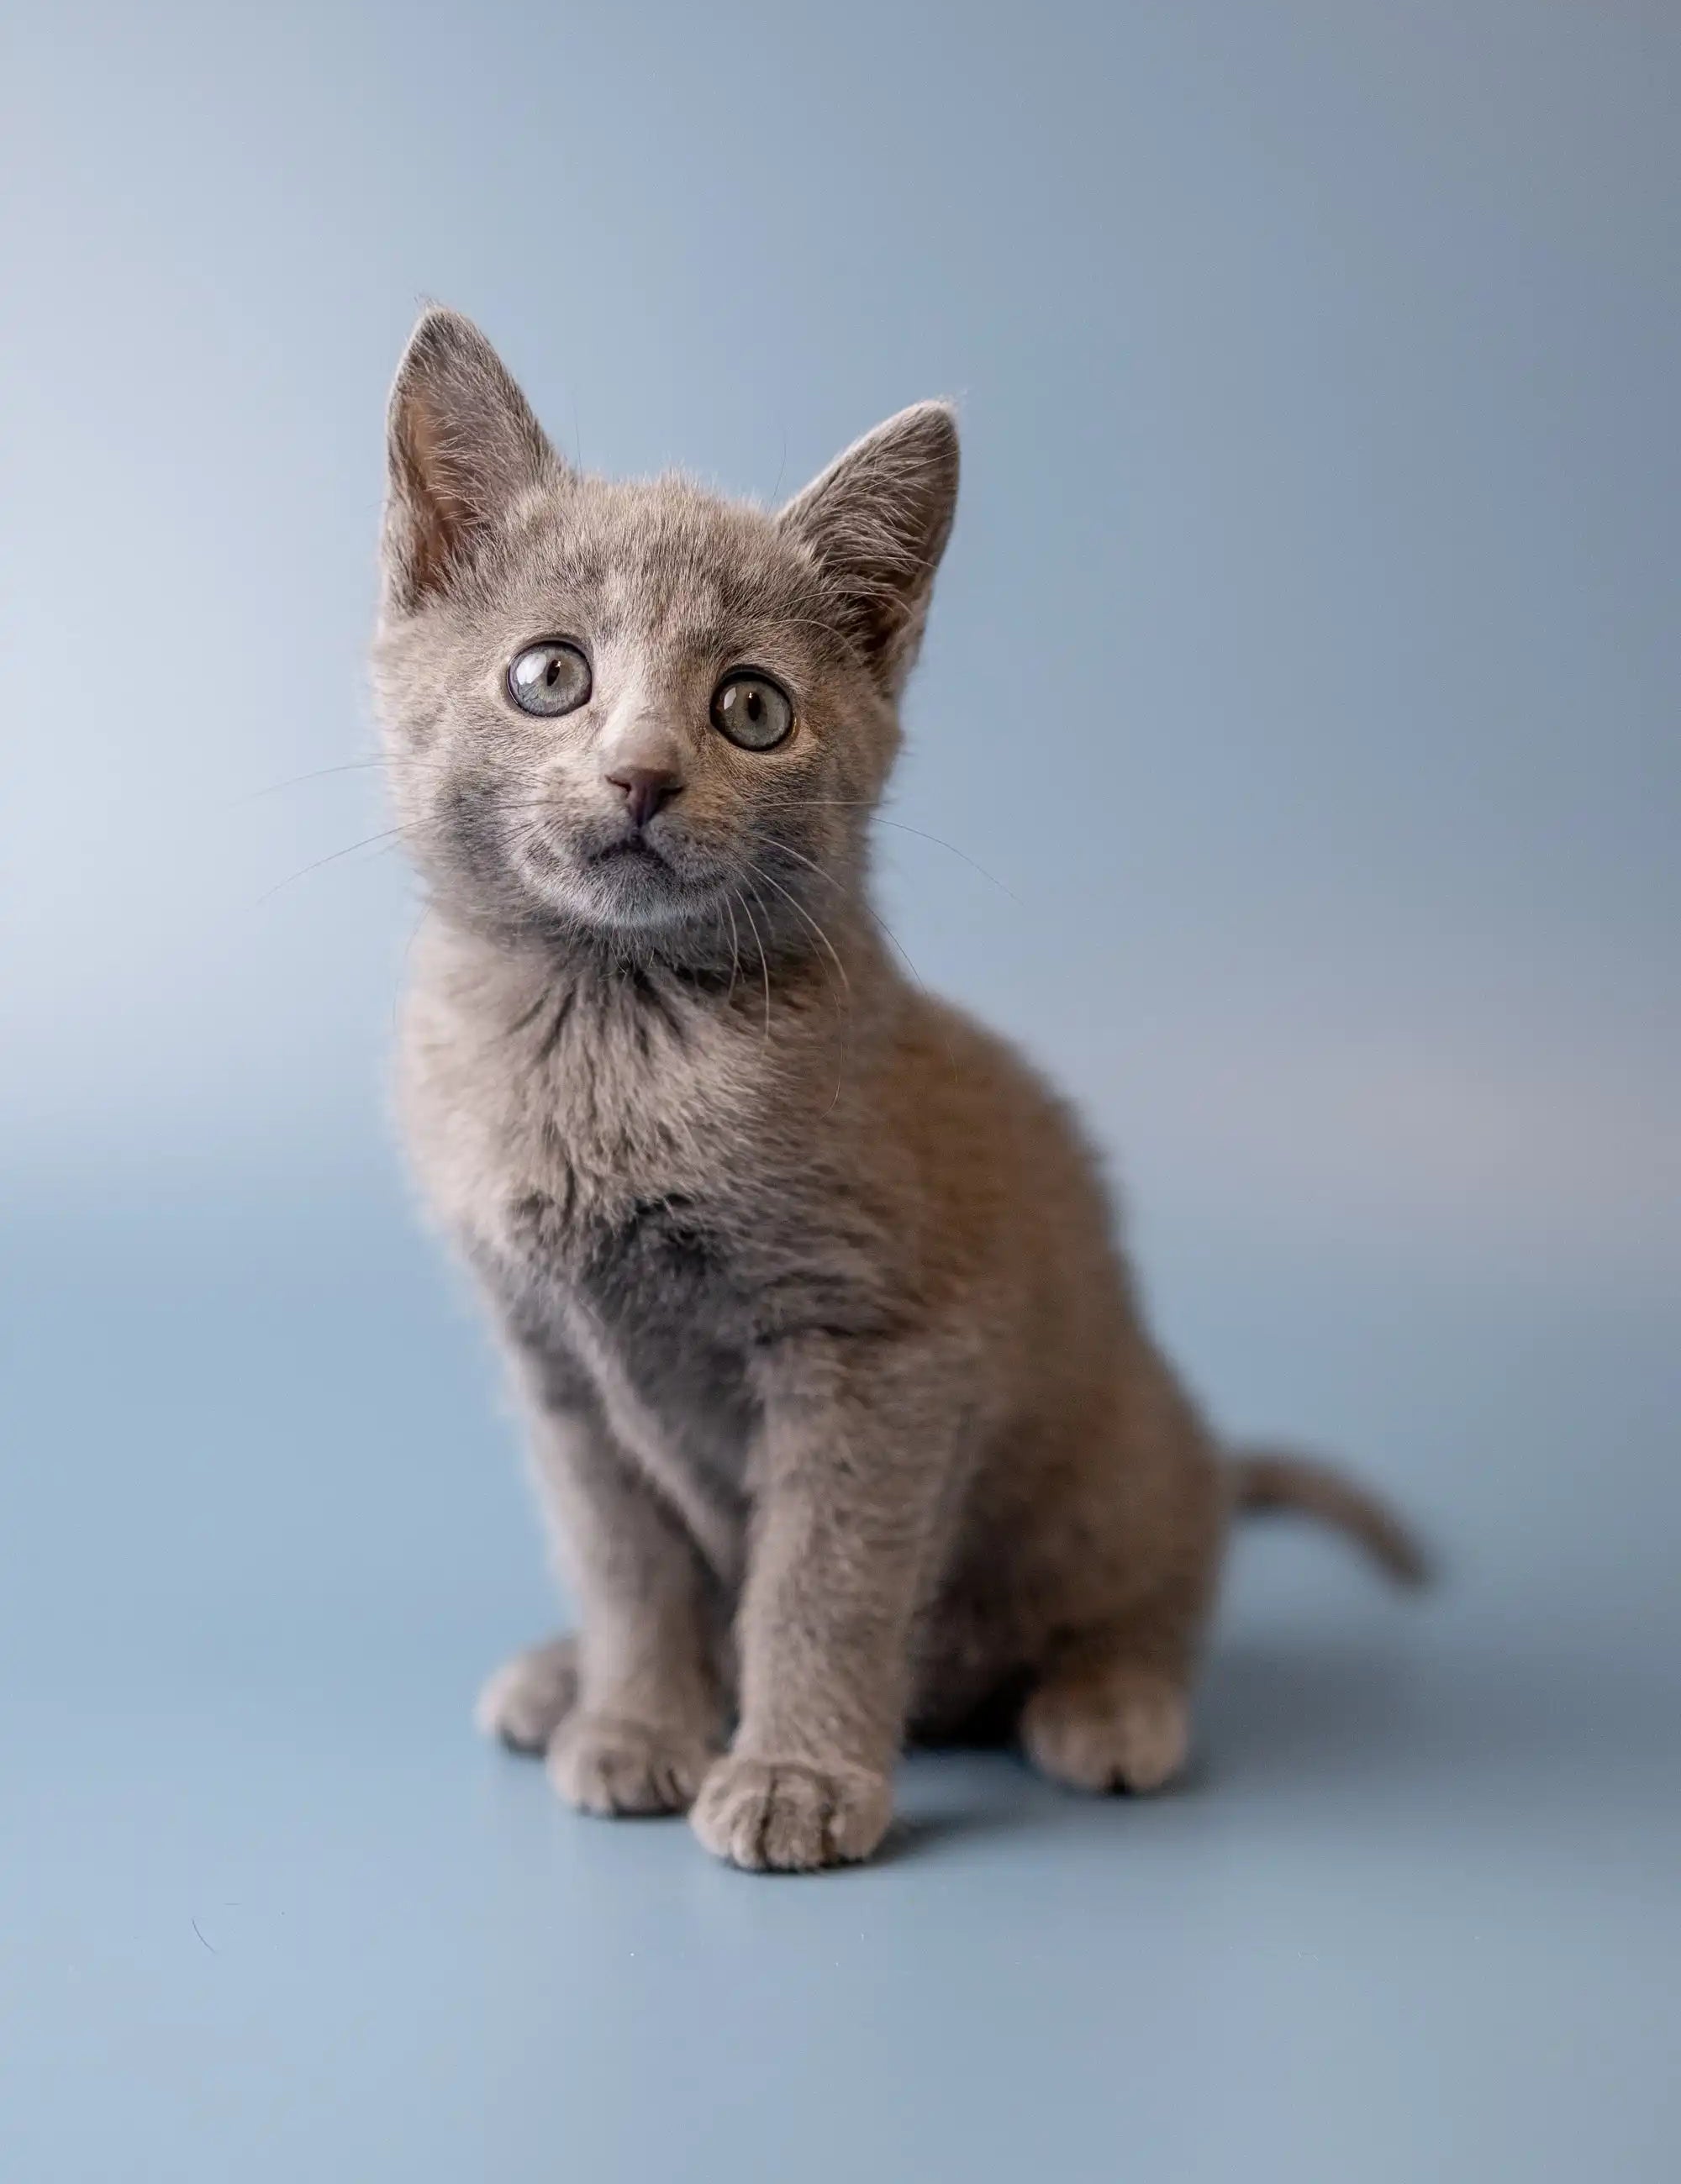 Ukranian Blue Kittens For Sale Winny | Russian Kitten